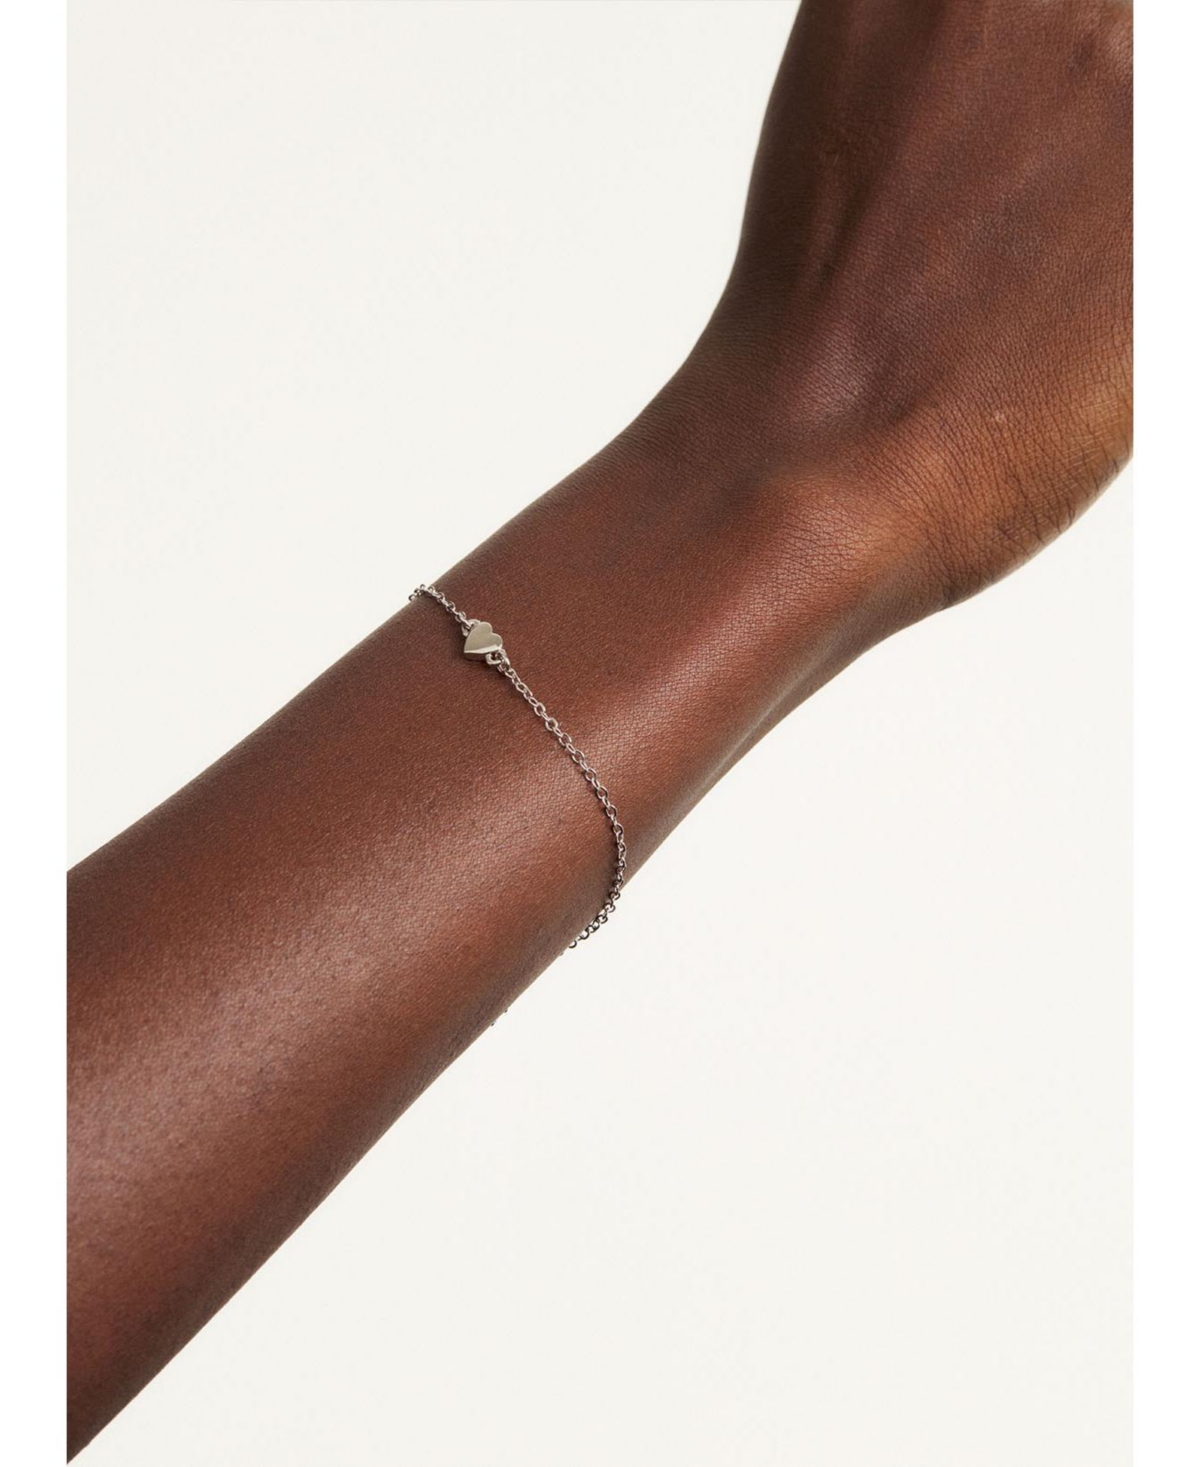 Harsaa: Tiny Heart Adjustable Bracelet For Women - Rose gold